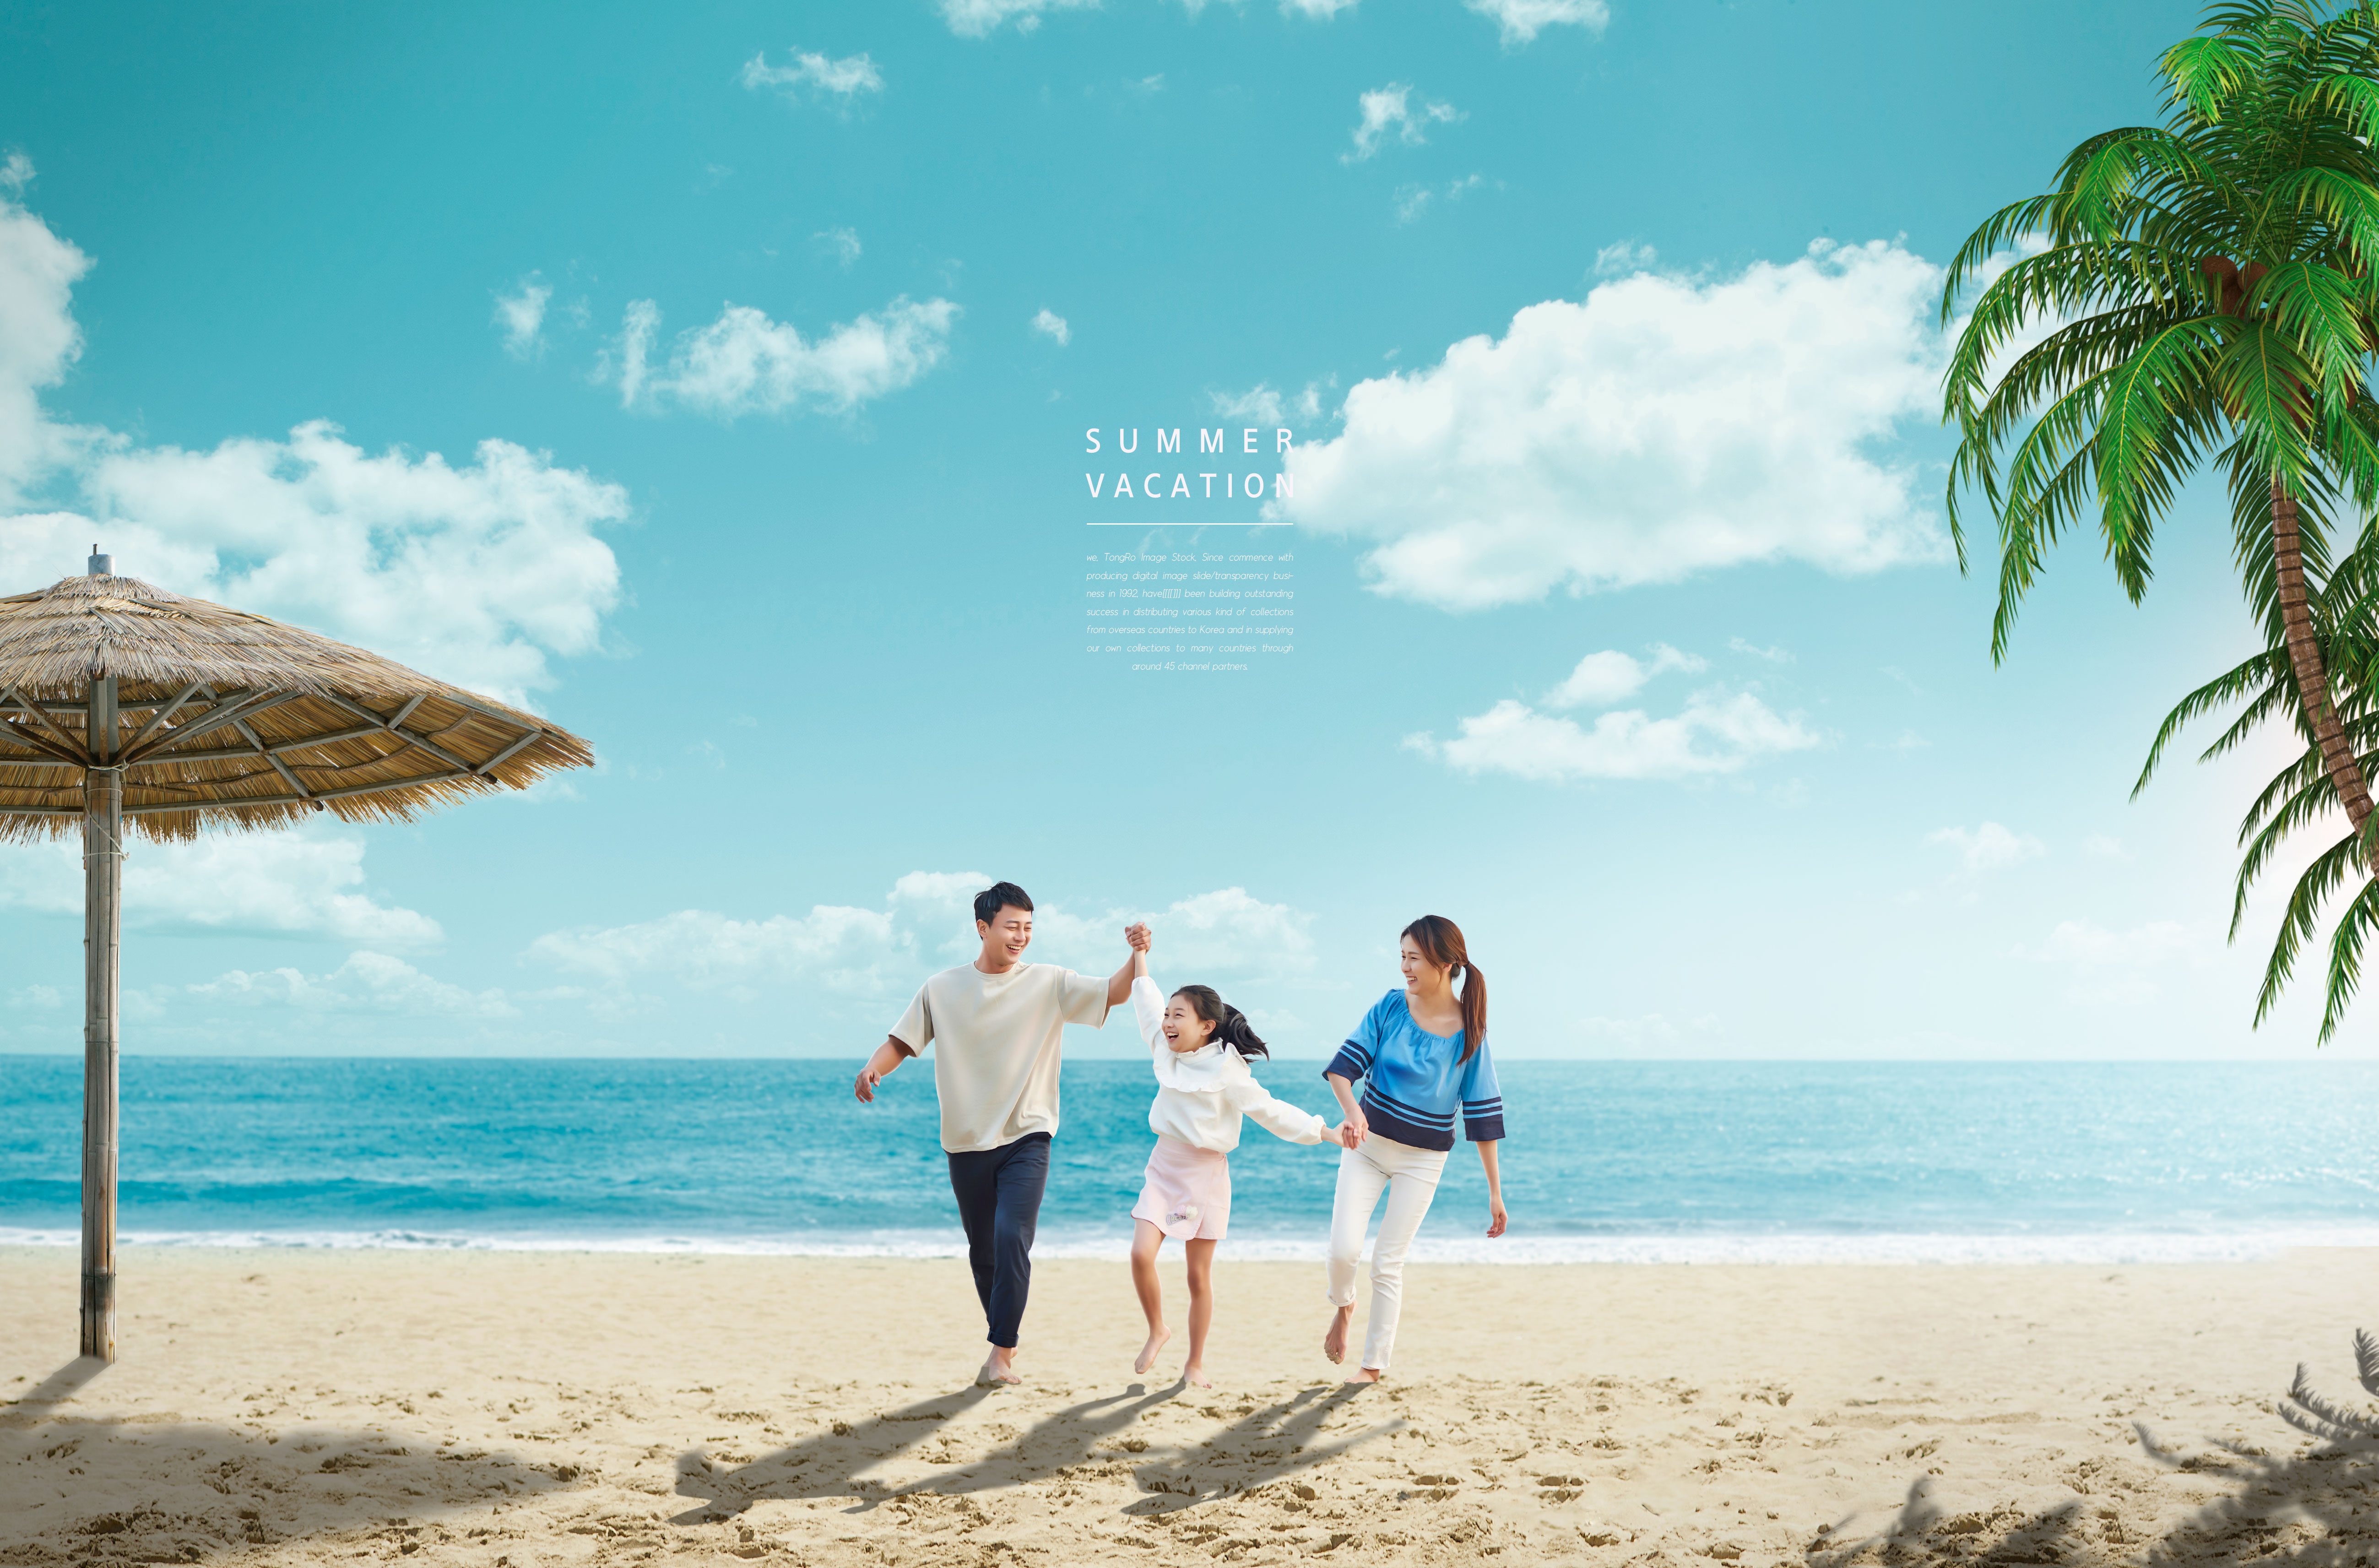 夏季暑假家庭旅行活动宣传海报套装[PSD]插图(2)